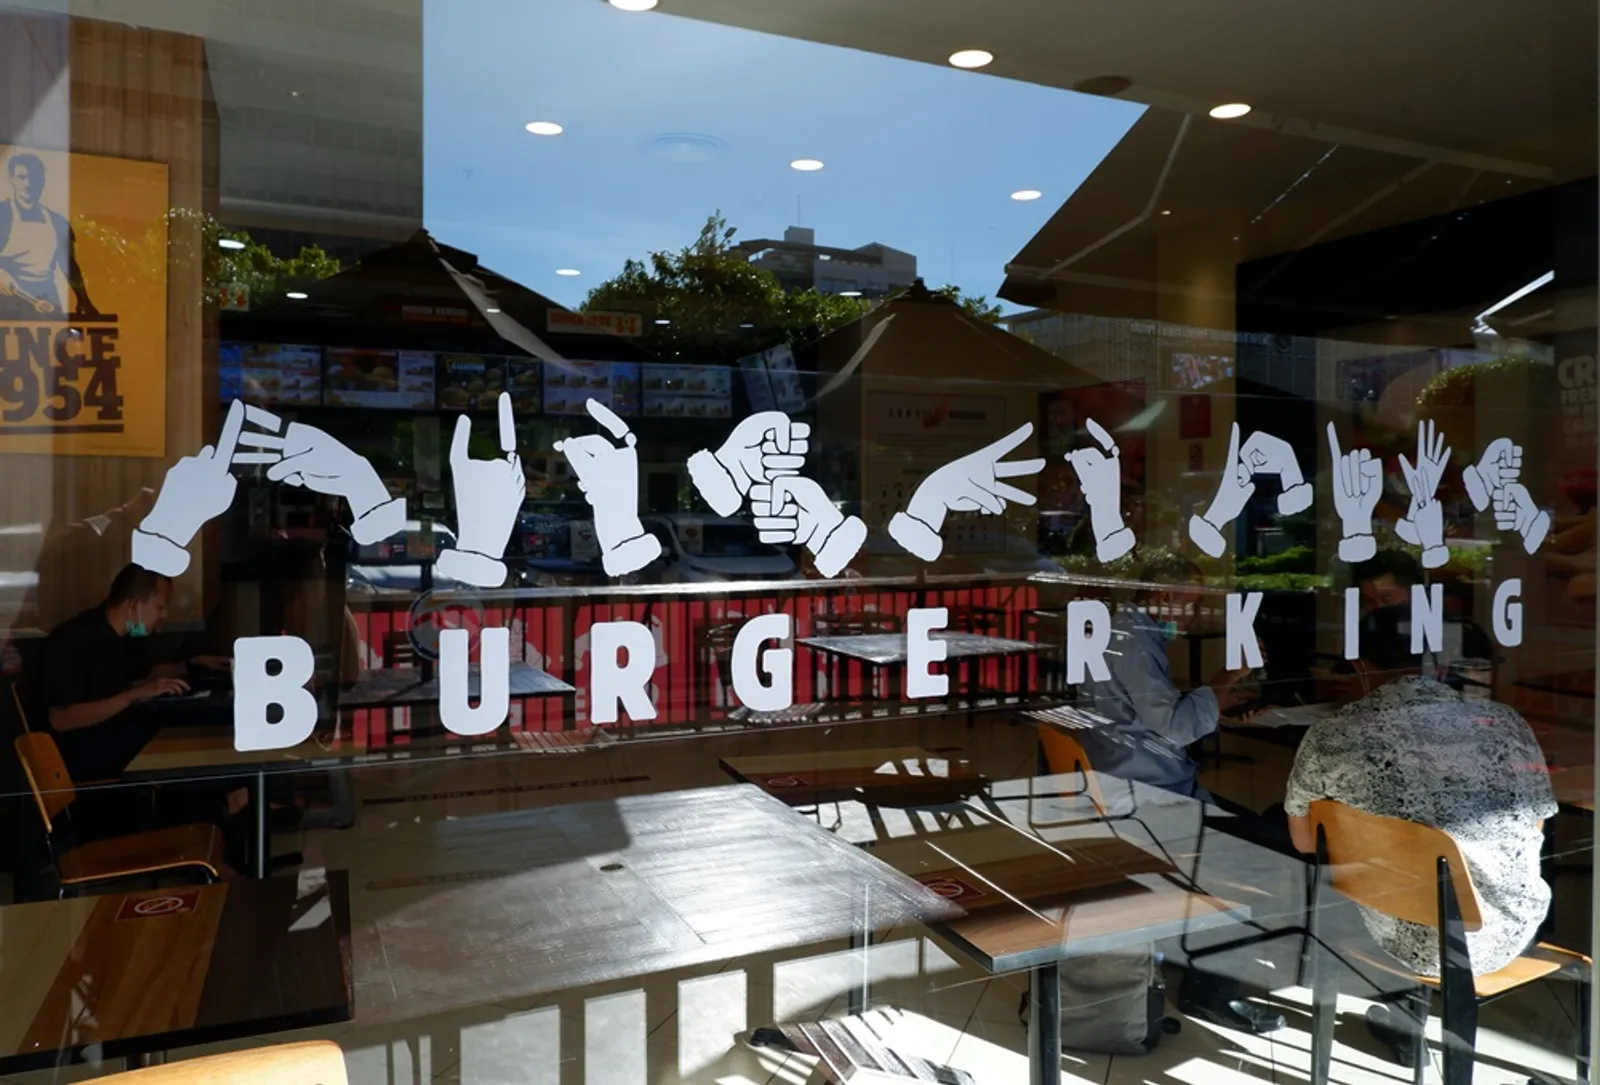 #SunyiBersuara, Iniasi Burger King® untuk Rekrut Pekerja Disabilitas